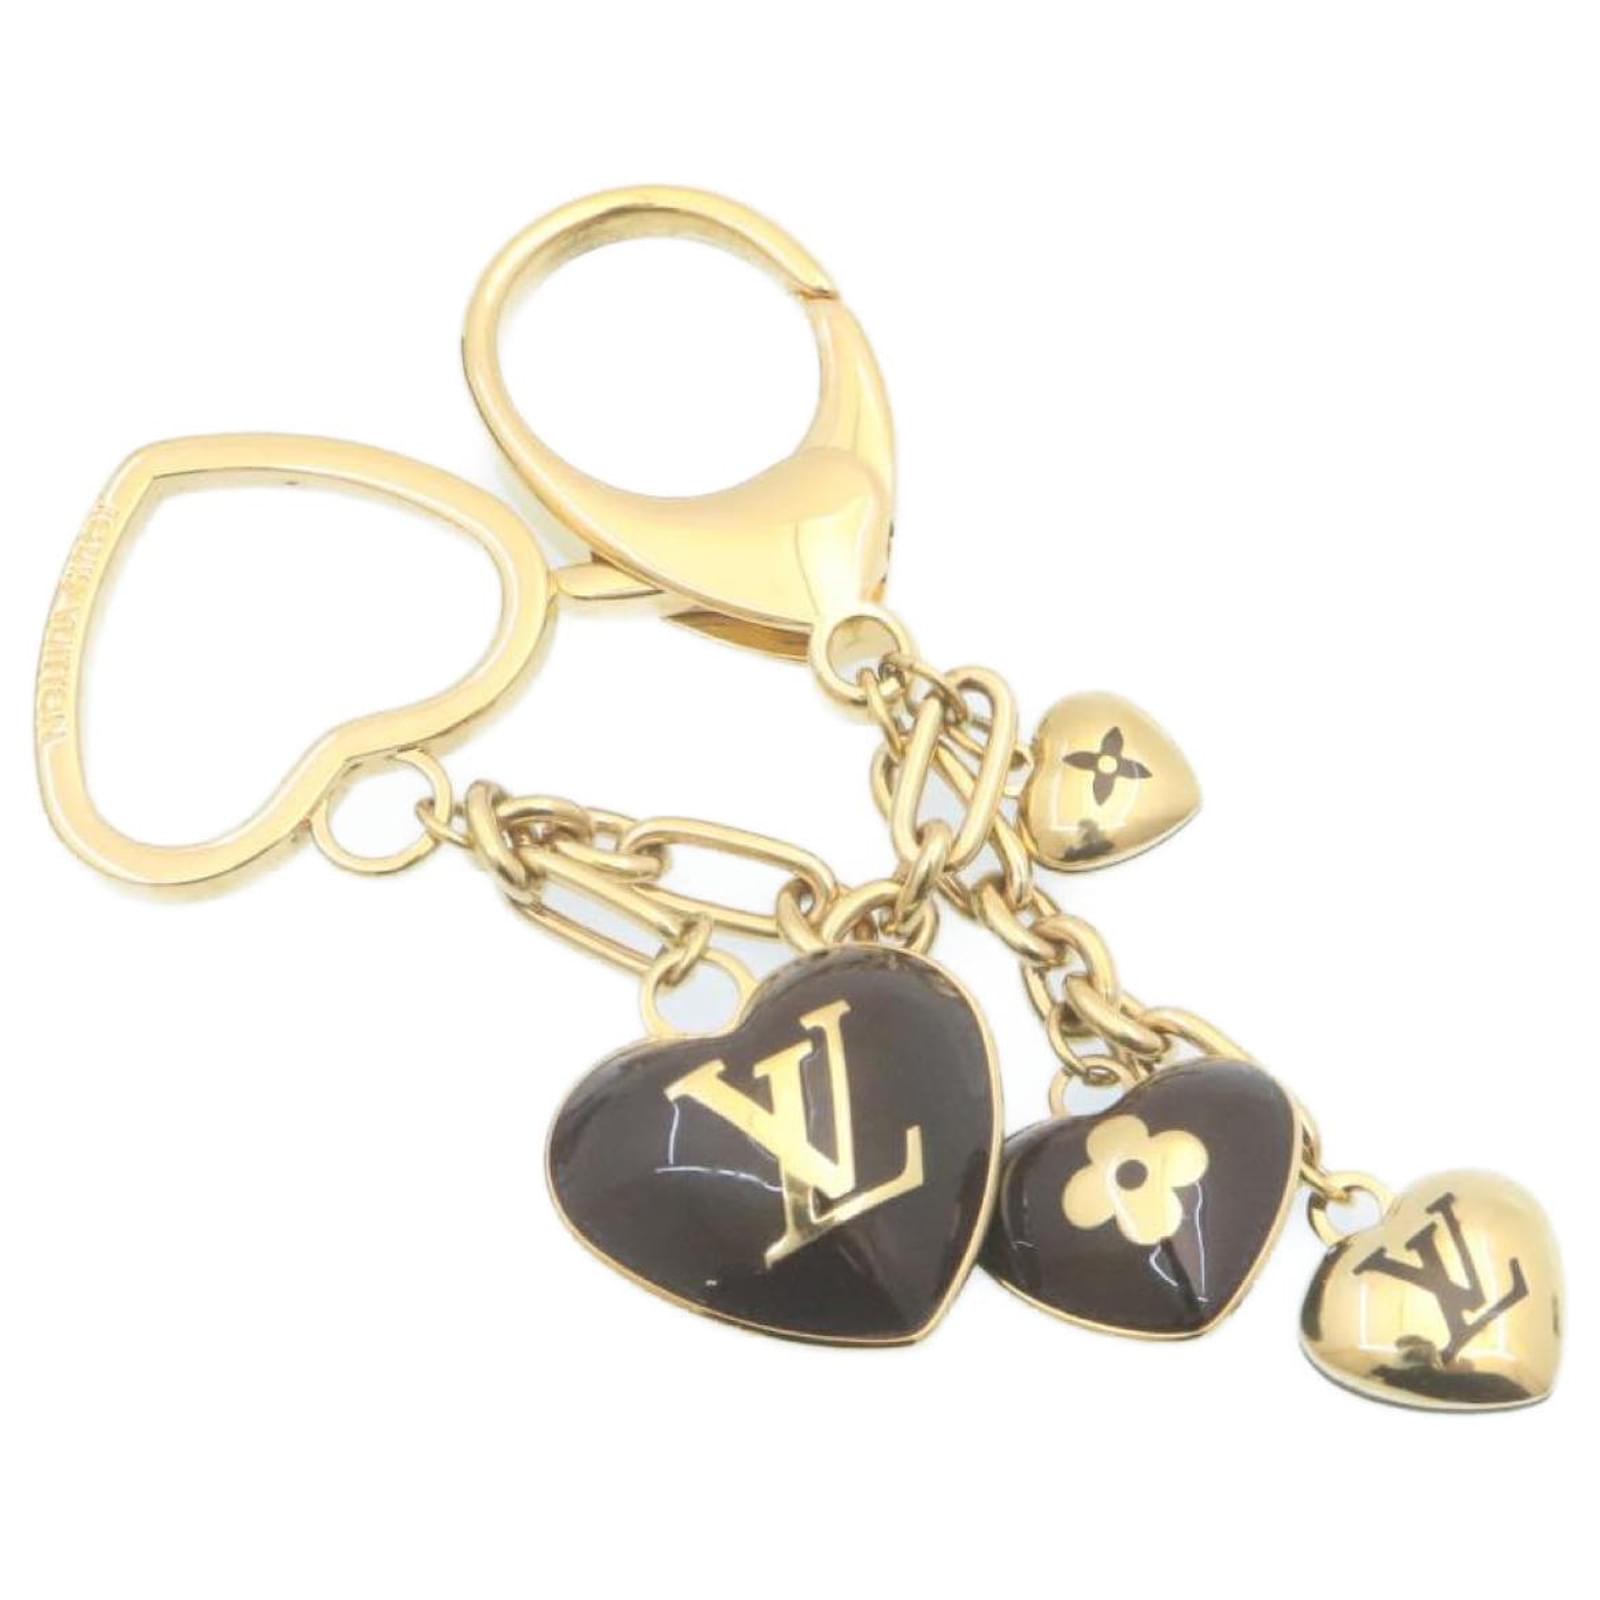 Louis Vuitton New Release Sac Coeur Heart Bag 